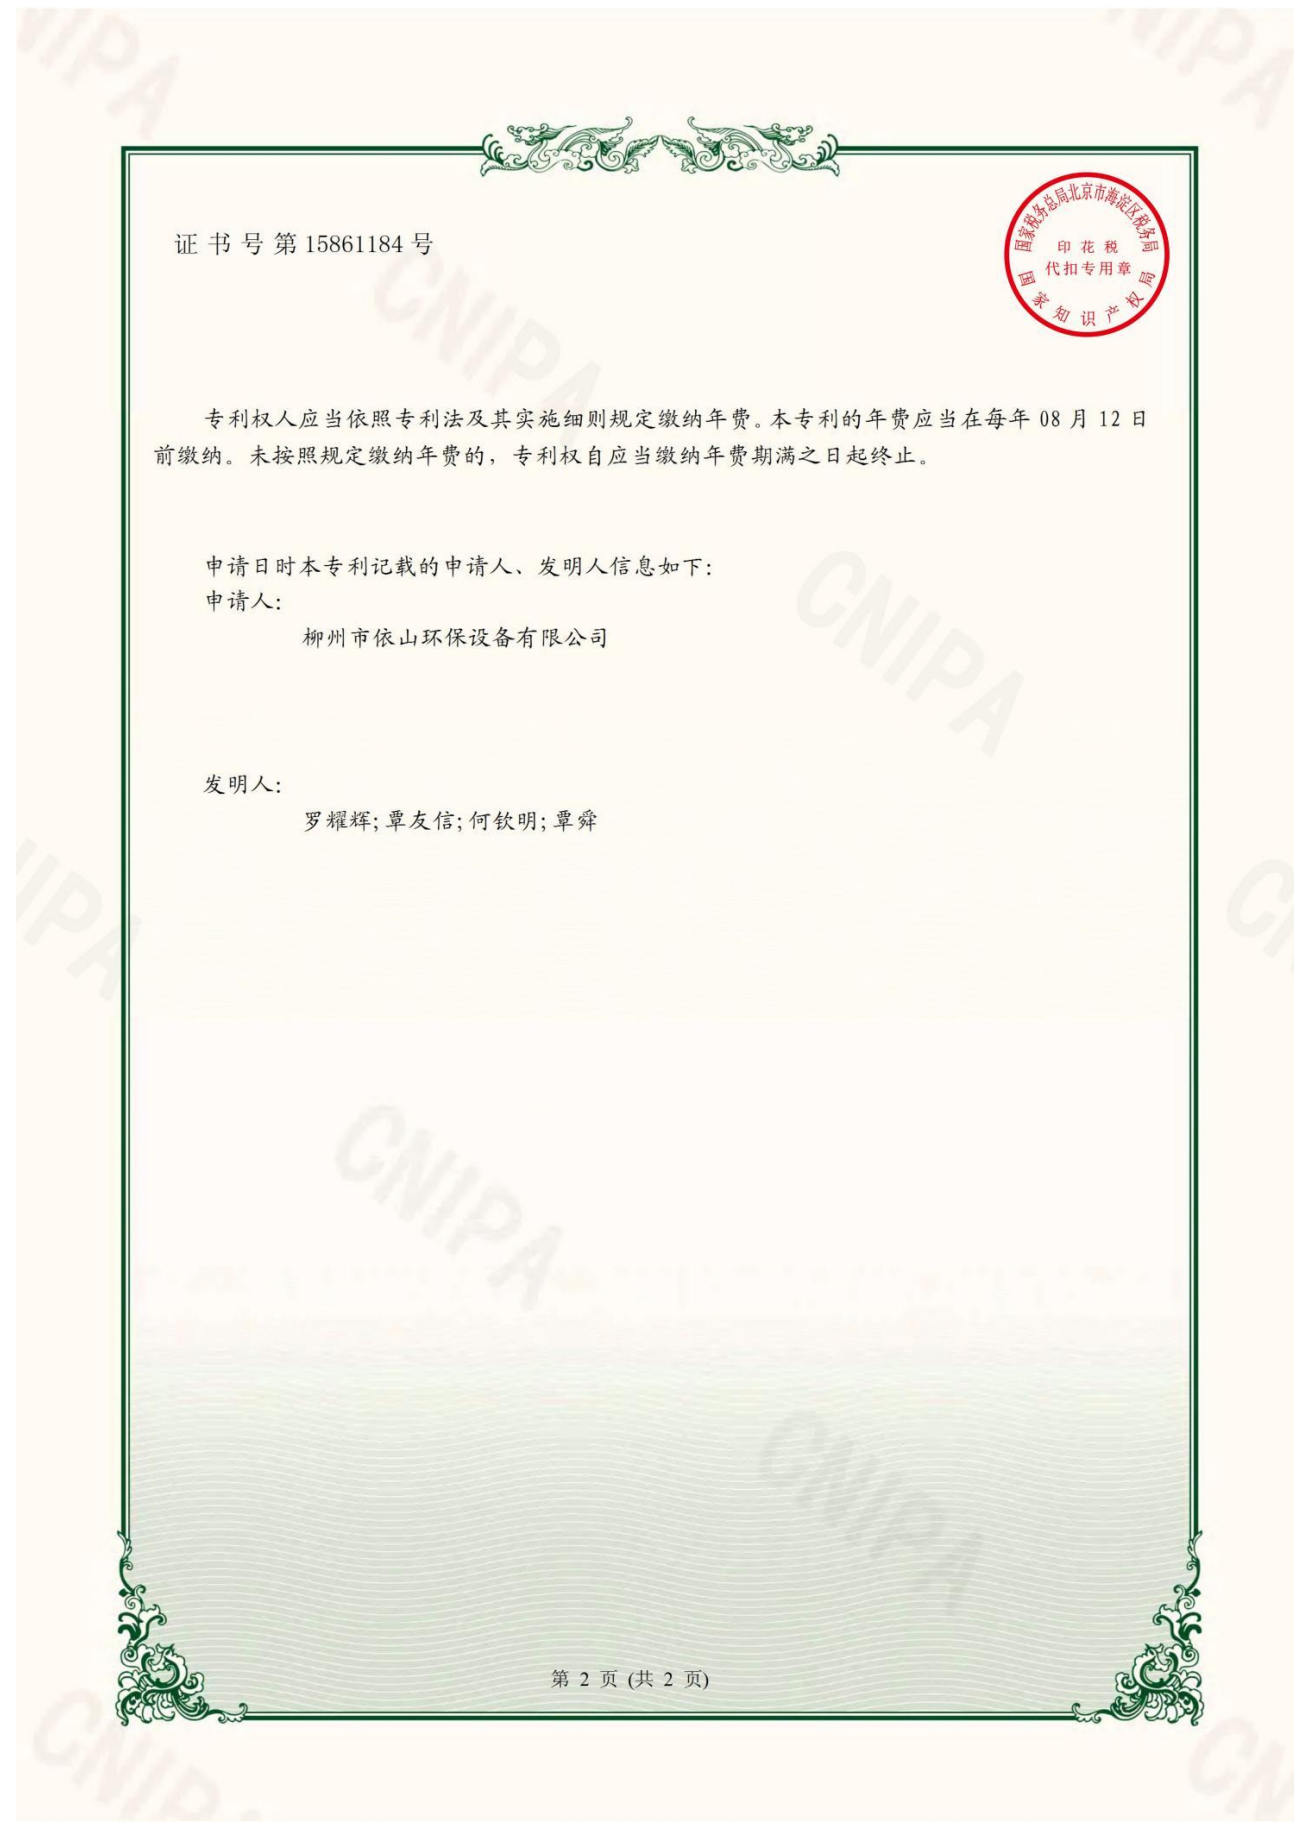 柳州市依山环保设备有限公司资质文件_23.jpg